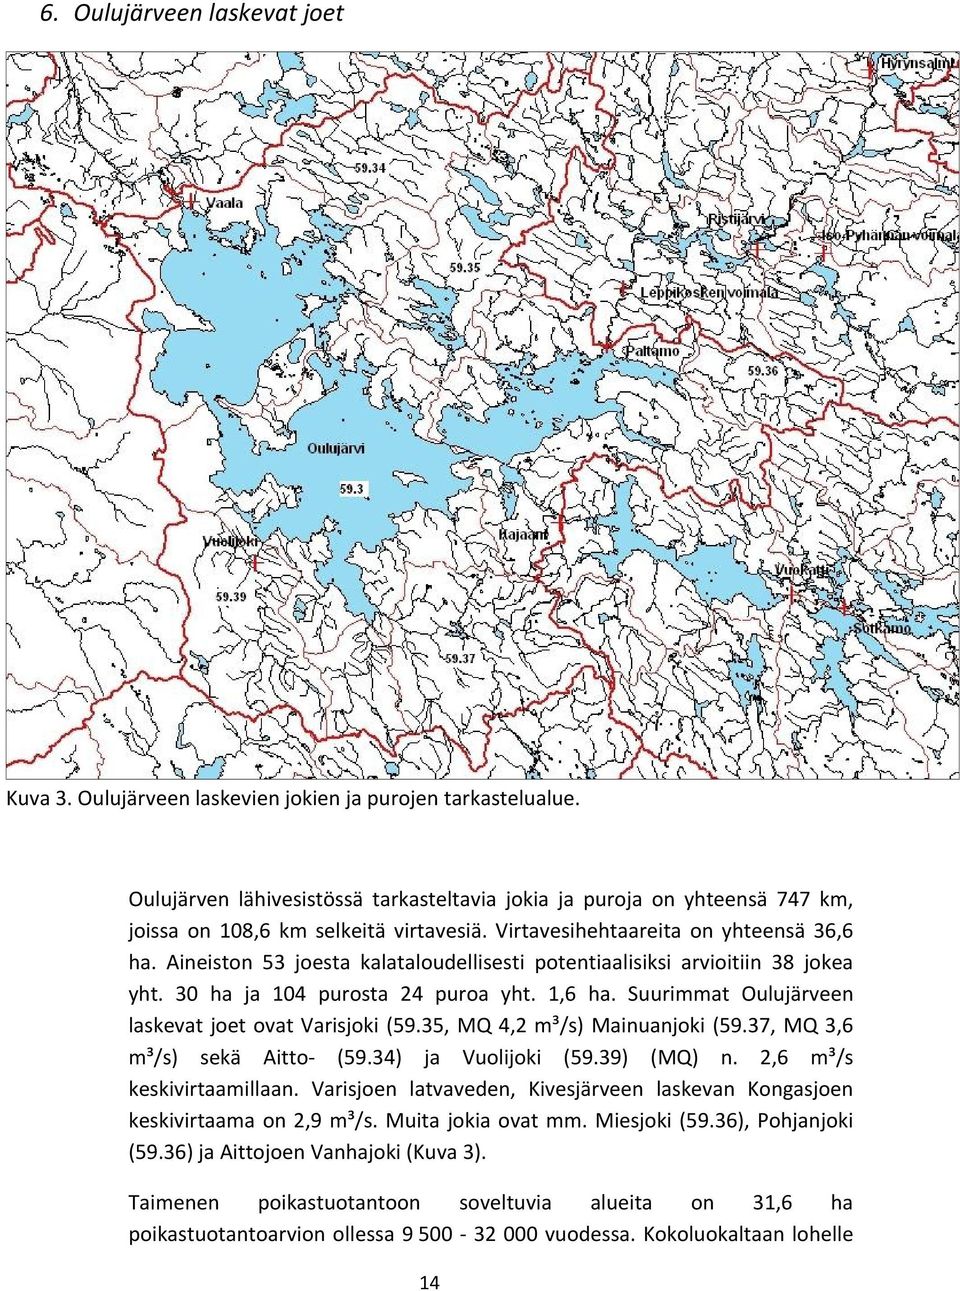 Aineiston 53 joesta kalataloudellisesti potentiaalisiksi arvioitiin 38 jokea yht. 30 ha ja 104 purosta 24 puroa yht. 1,6 ha. Suurimmat Oulujärveen laskevat joet ovat Varisjoki (59.